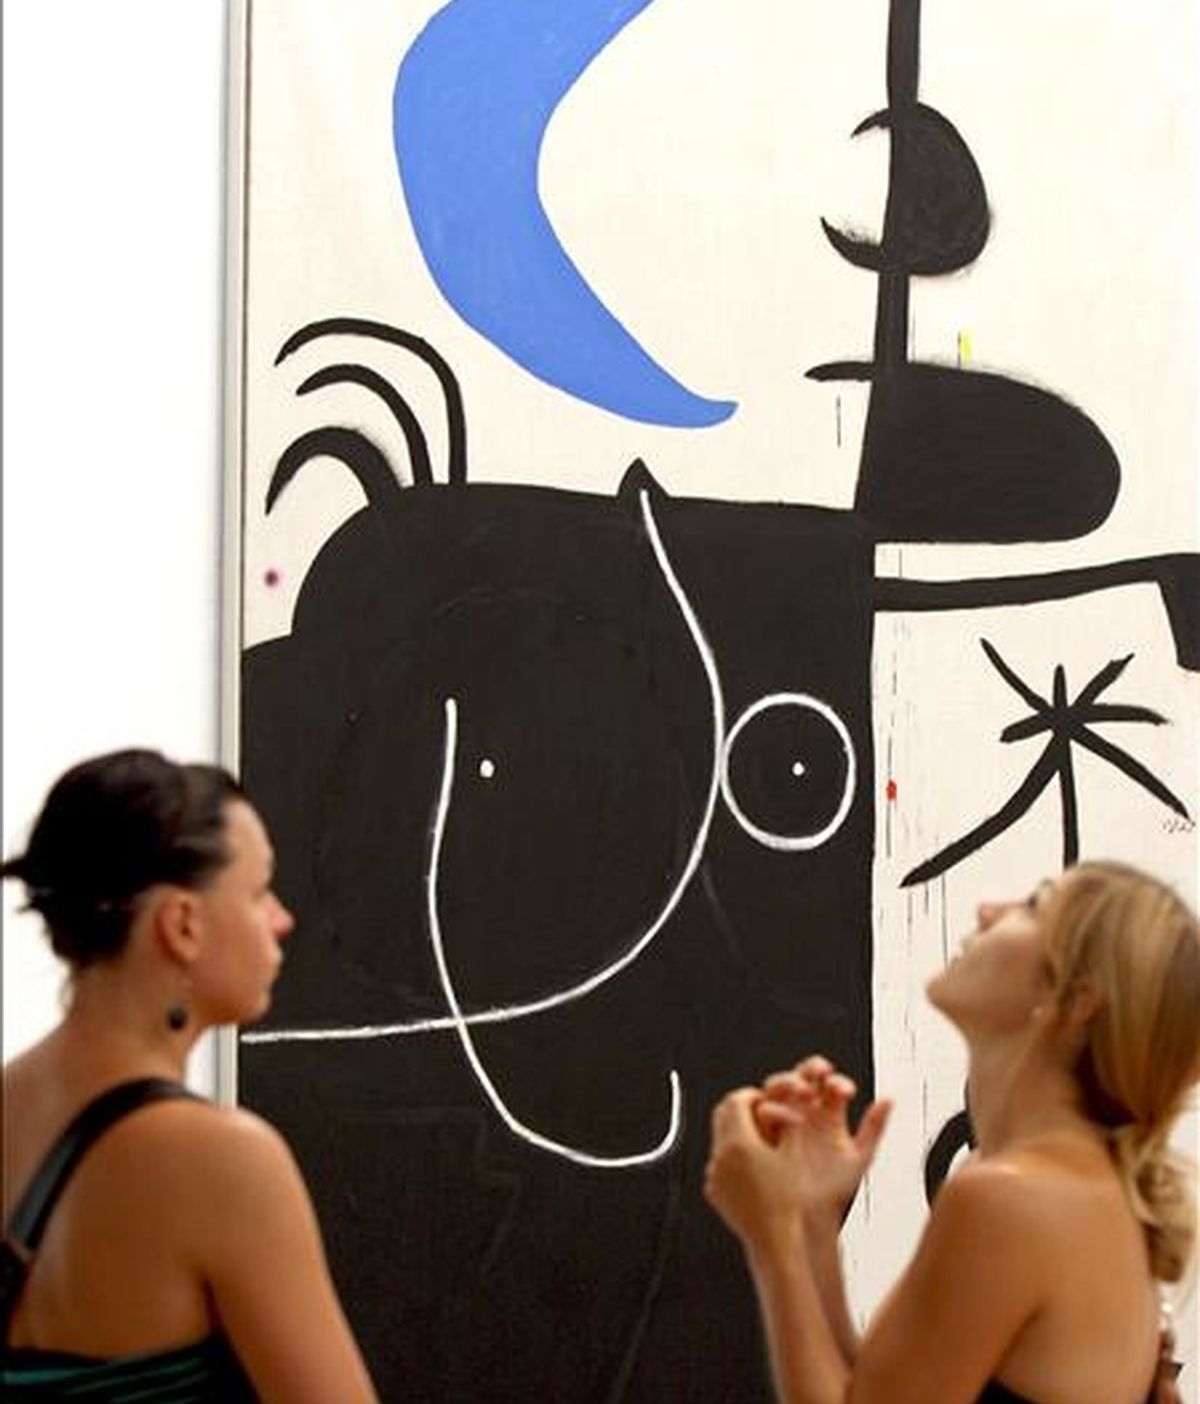 Dos jóvenes ante el cuadro "Mujer delante la lunaIl" de Joan Miró, que forma parte de la exposición "Miró-Dupin Art i poesia", que acoge la Fundación Miró de Barcelona en la que se analiza la estrecha relación y las complicidades que mantuvieron el artista mallorquín y el poeta y biográfo Jacques Dupin. EFE